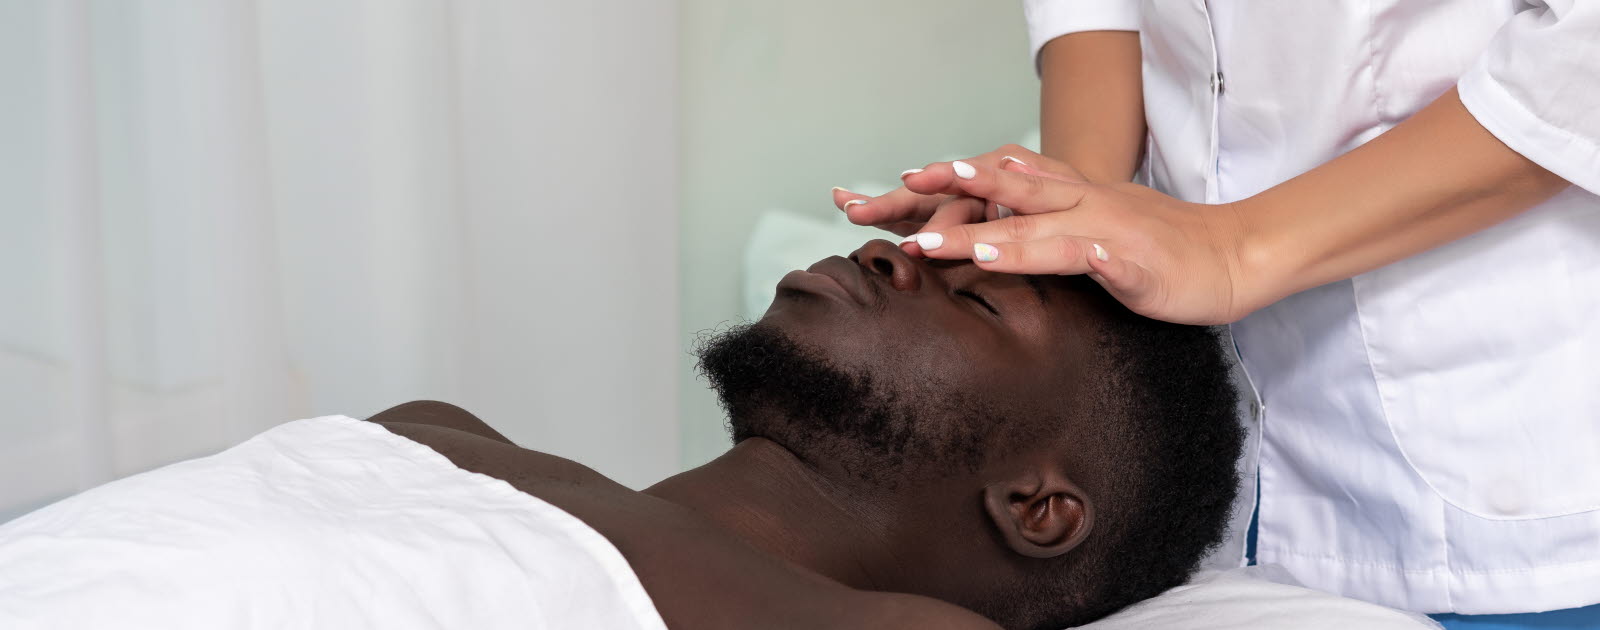 Woman giving a man a face massage.